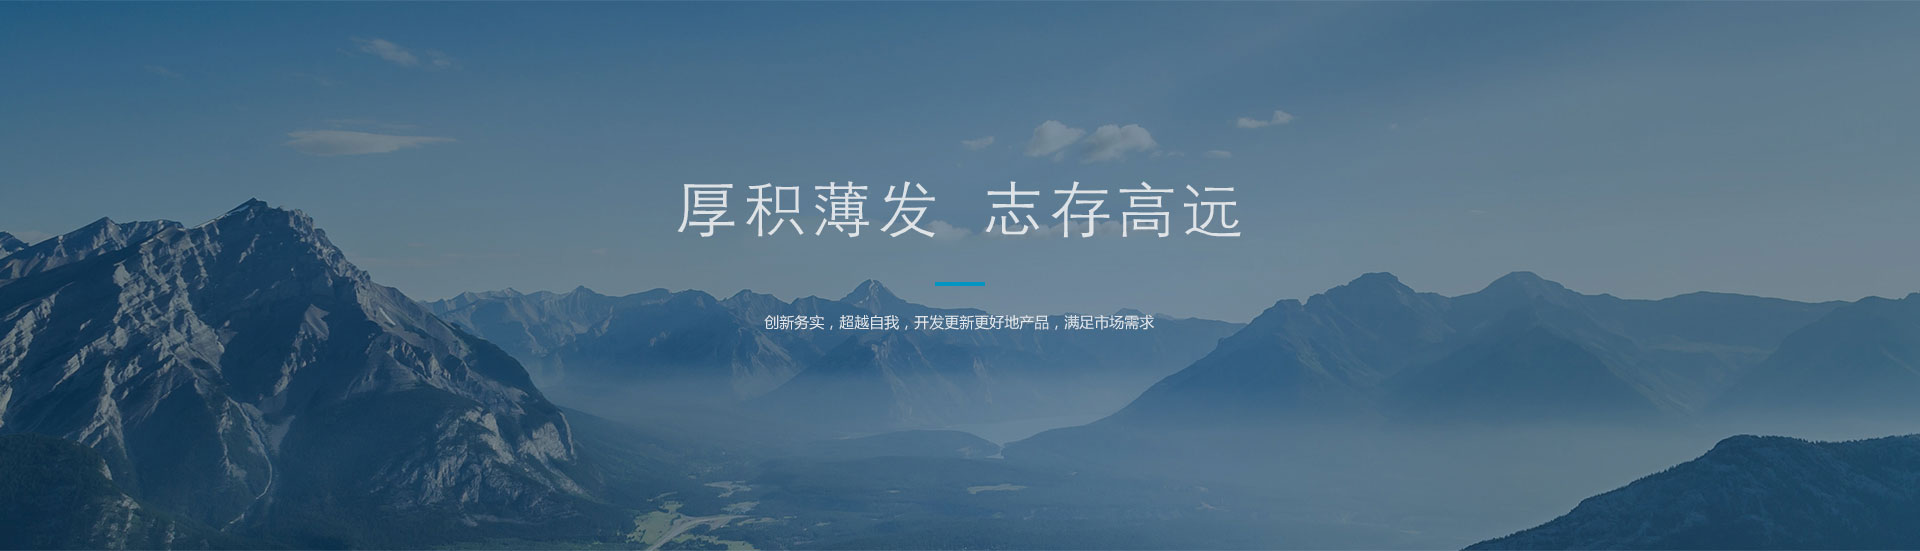 BWIN·必赢(中国)唯一官方网站